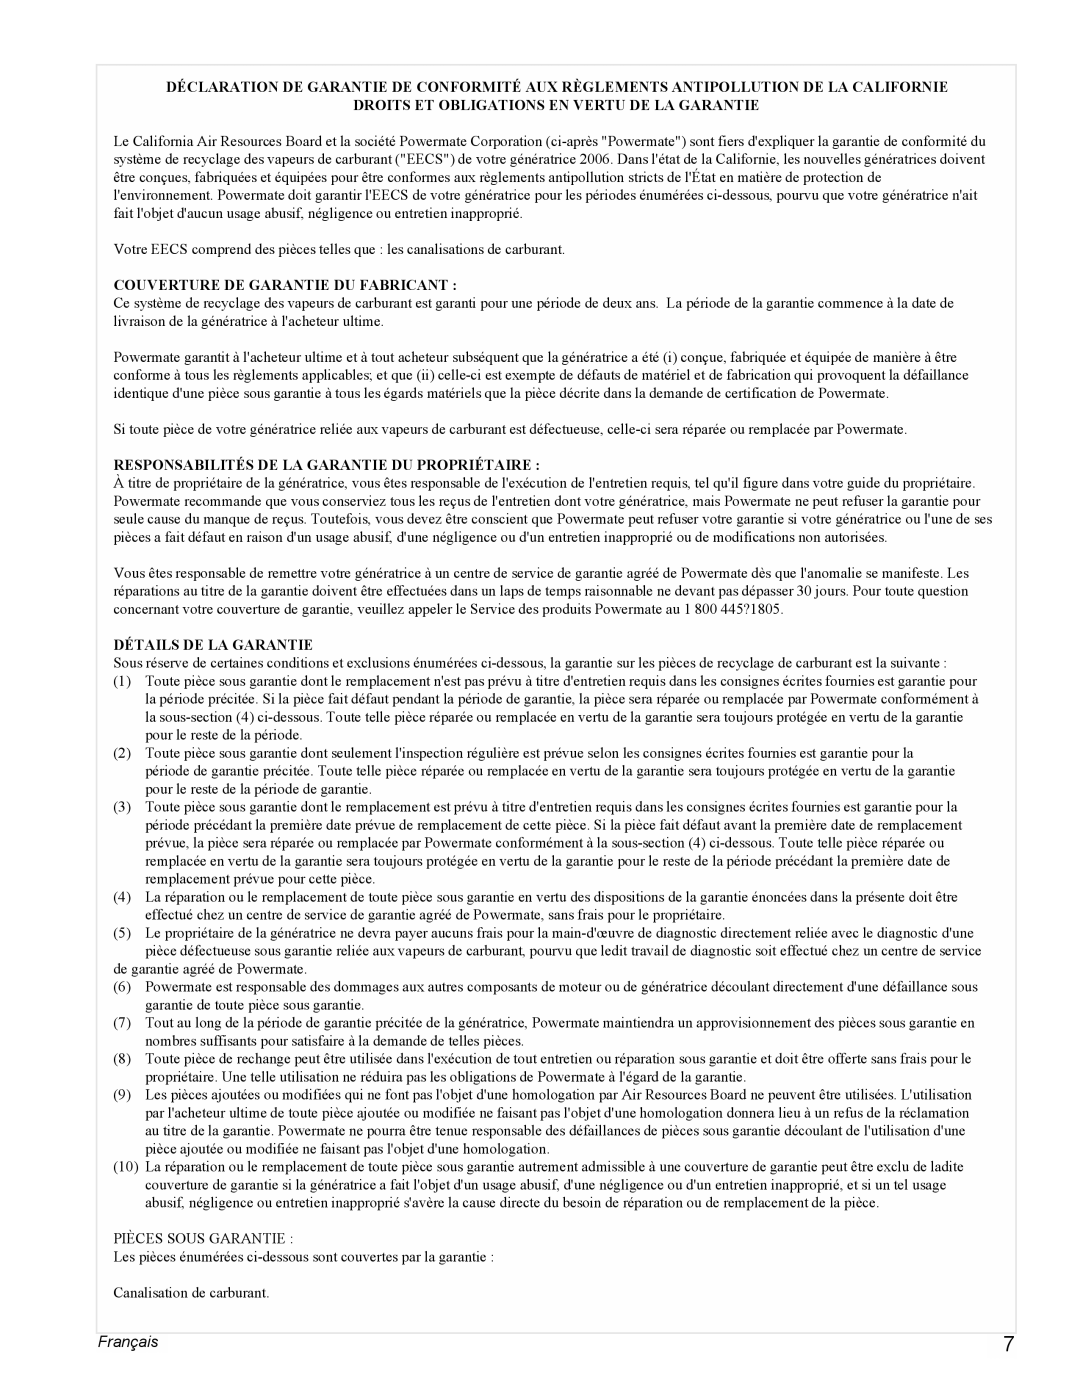 Powermate PMC401856 manual Français, Droits Et Obligations En Vertu De La Garantie, Couverture De Garantie Du Fabricant 